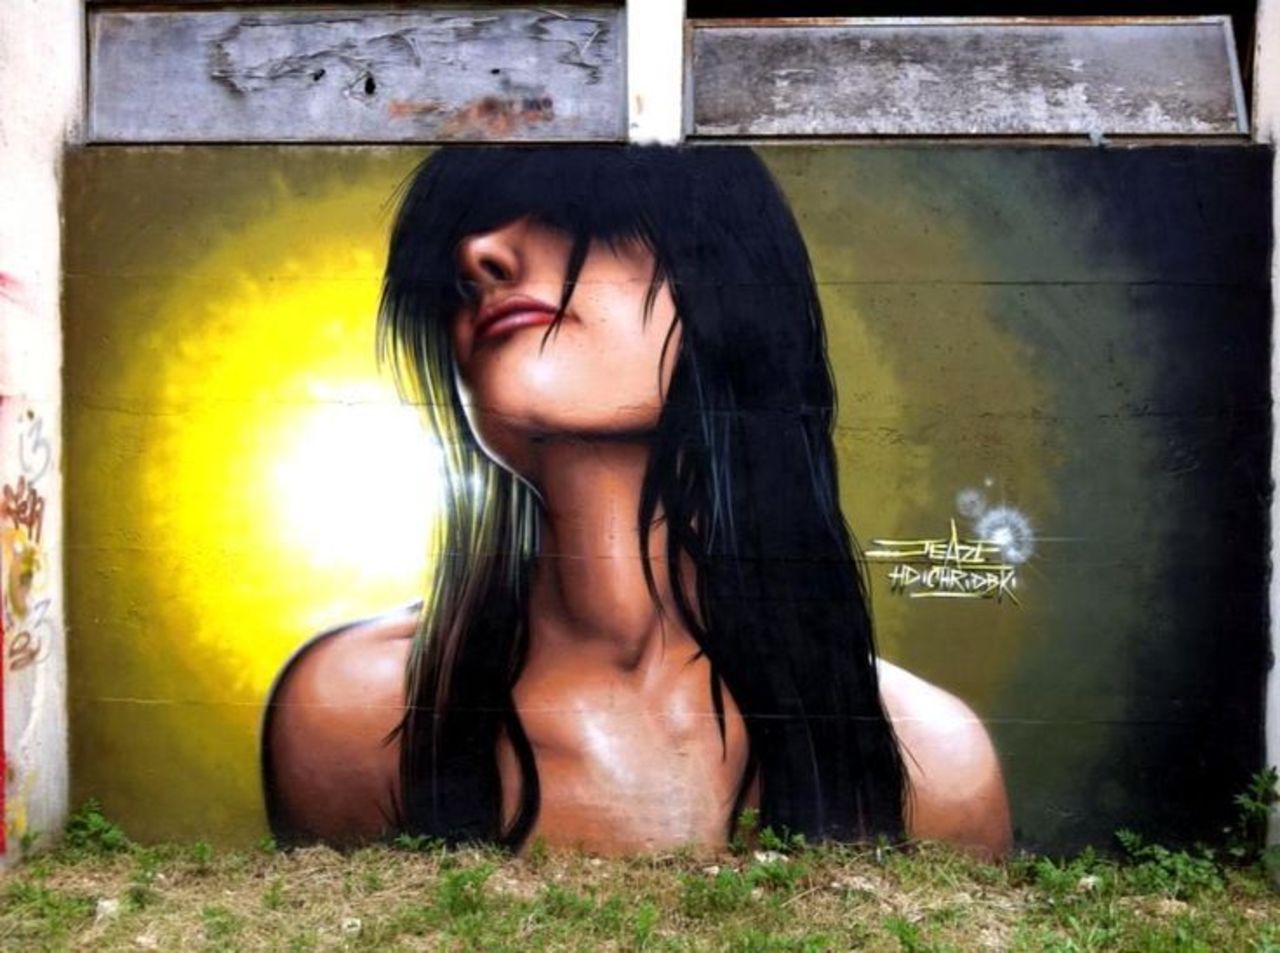 Jeaze Oner#streetart #mural #graffiti #art https://t.co/KQ83OppVOY